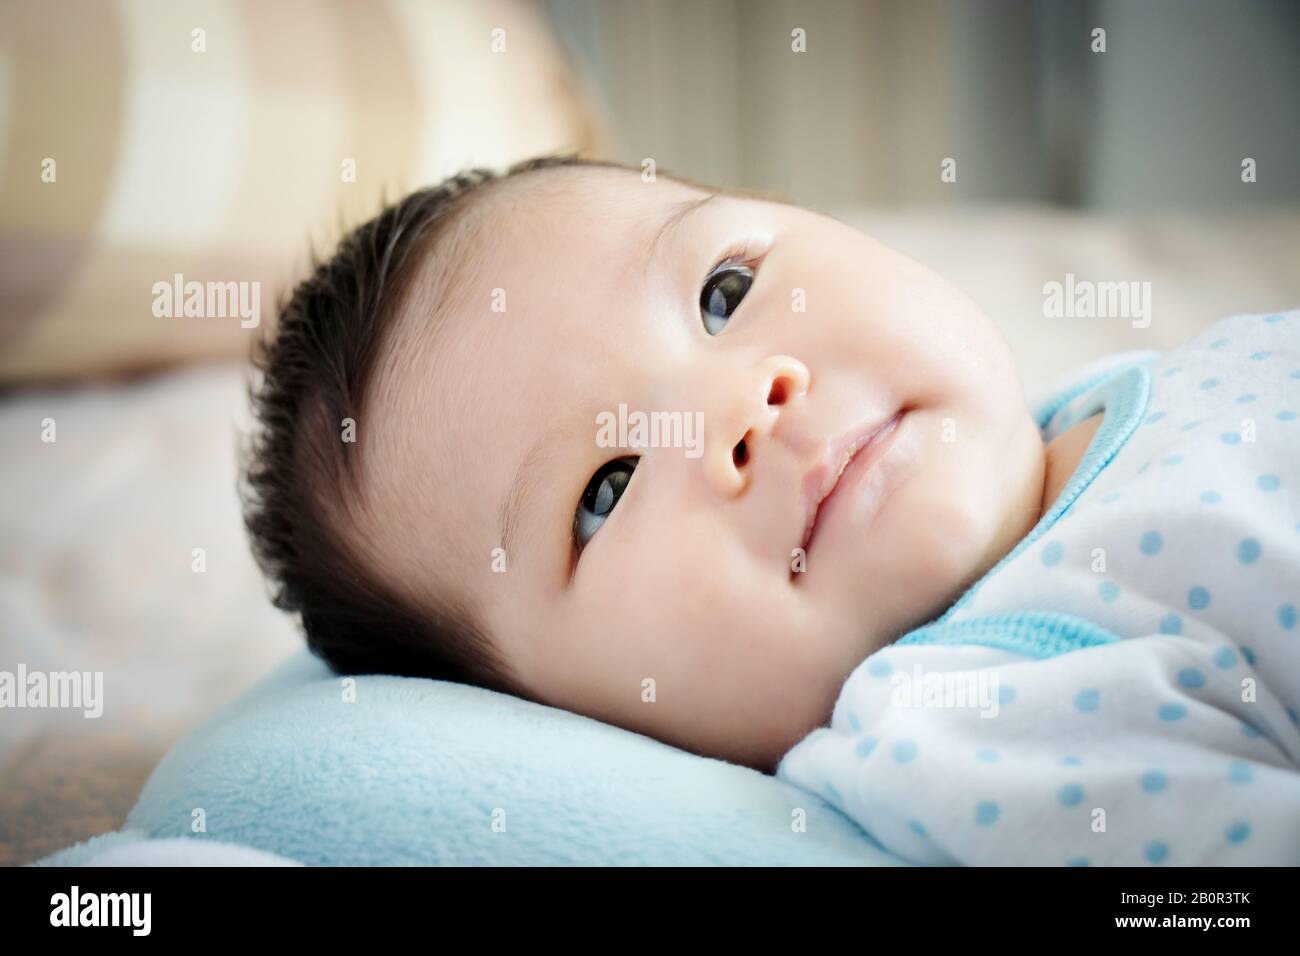 Portrait asiatique de bébé. Jolie fille asiatique de bébé ouvert les yeux sur le lit confortable à la recherche d'un parent le jour avec un petit sourire. Concept heureux enfants. Banque D'Images